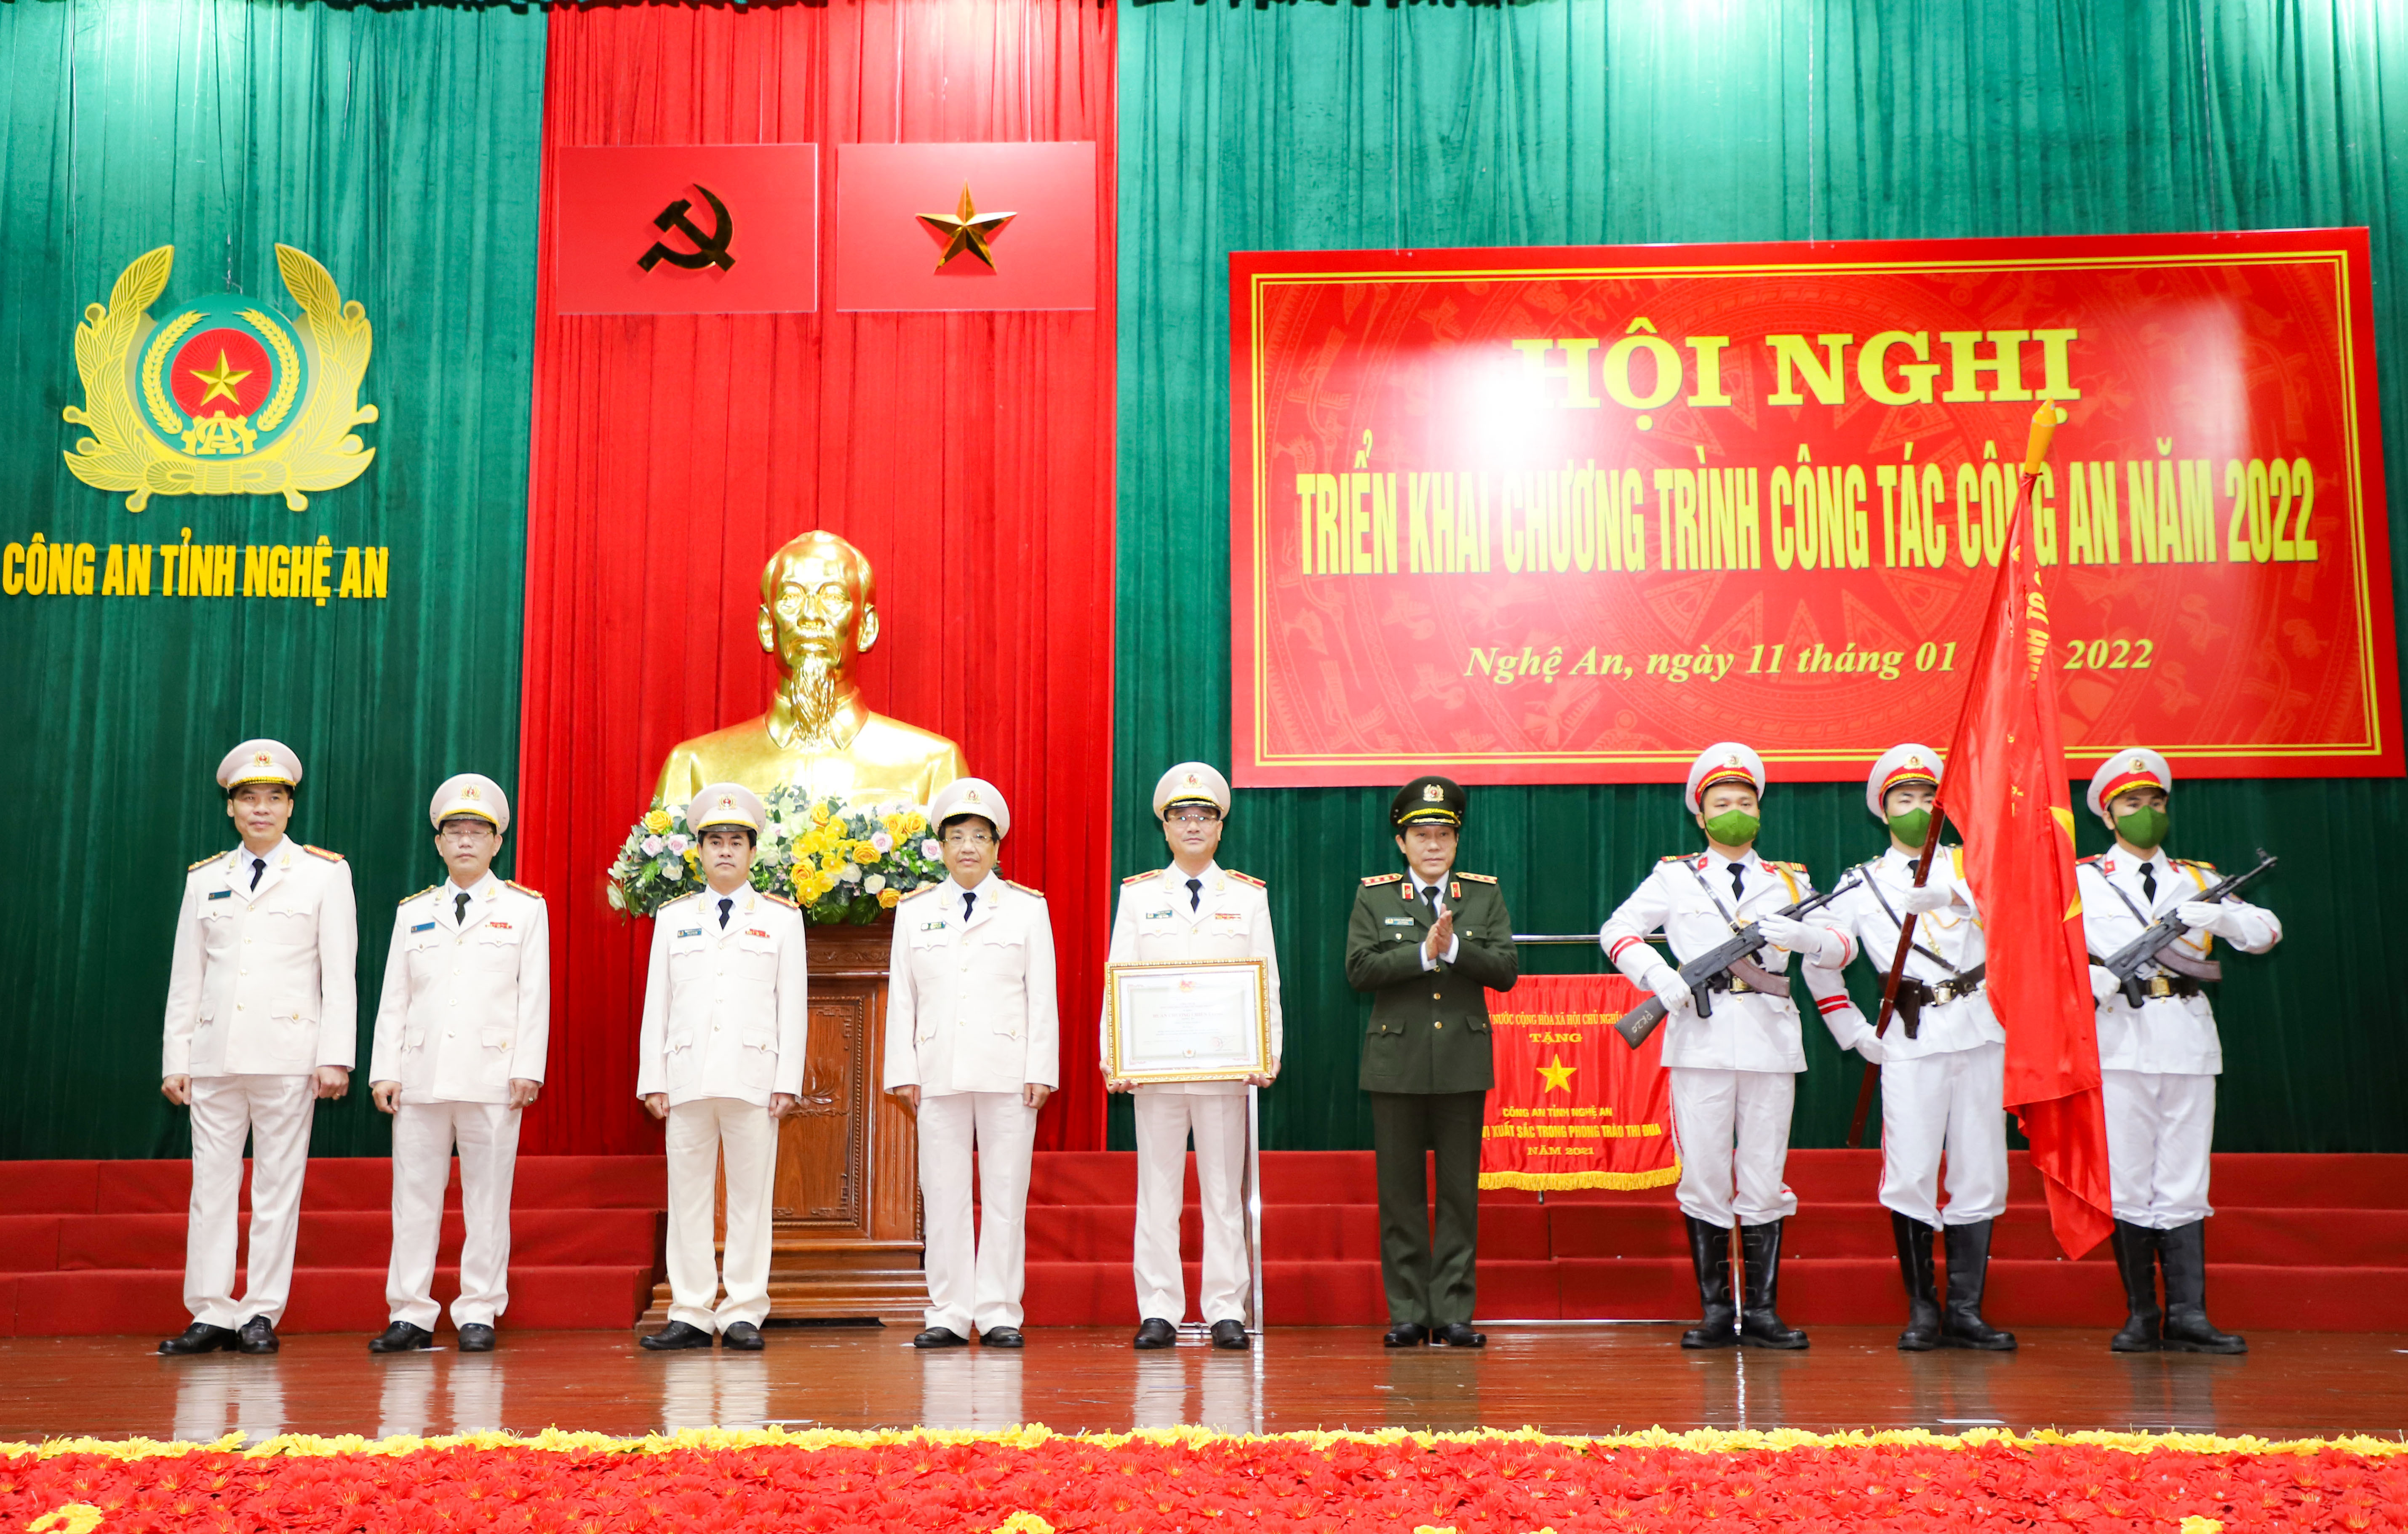 Thượng tướng Lương Tam Quang - Thứ trưởng Bộ Công an trao cho lãnh đạo Công an tỉnh Nghệ An. Ảnh: Phạm Bằng